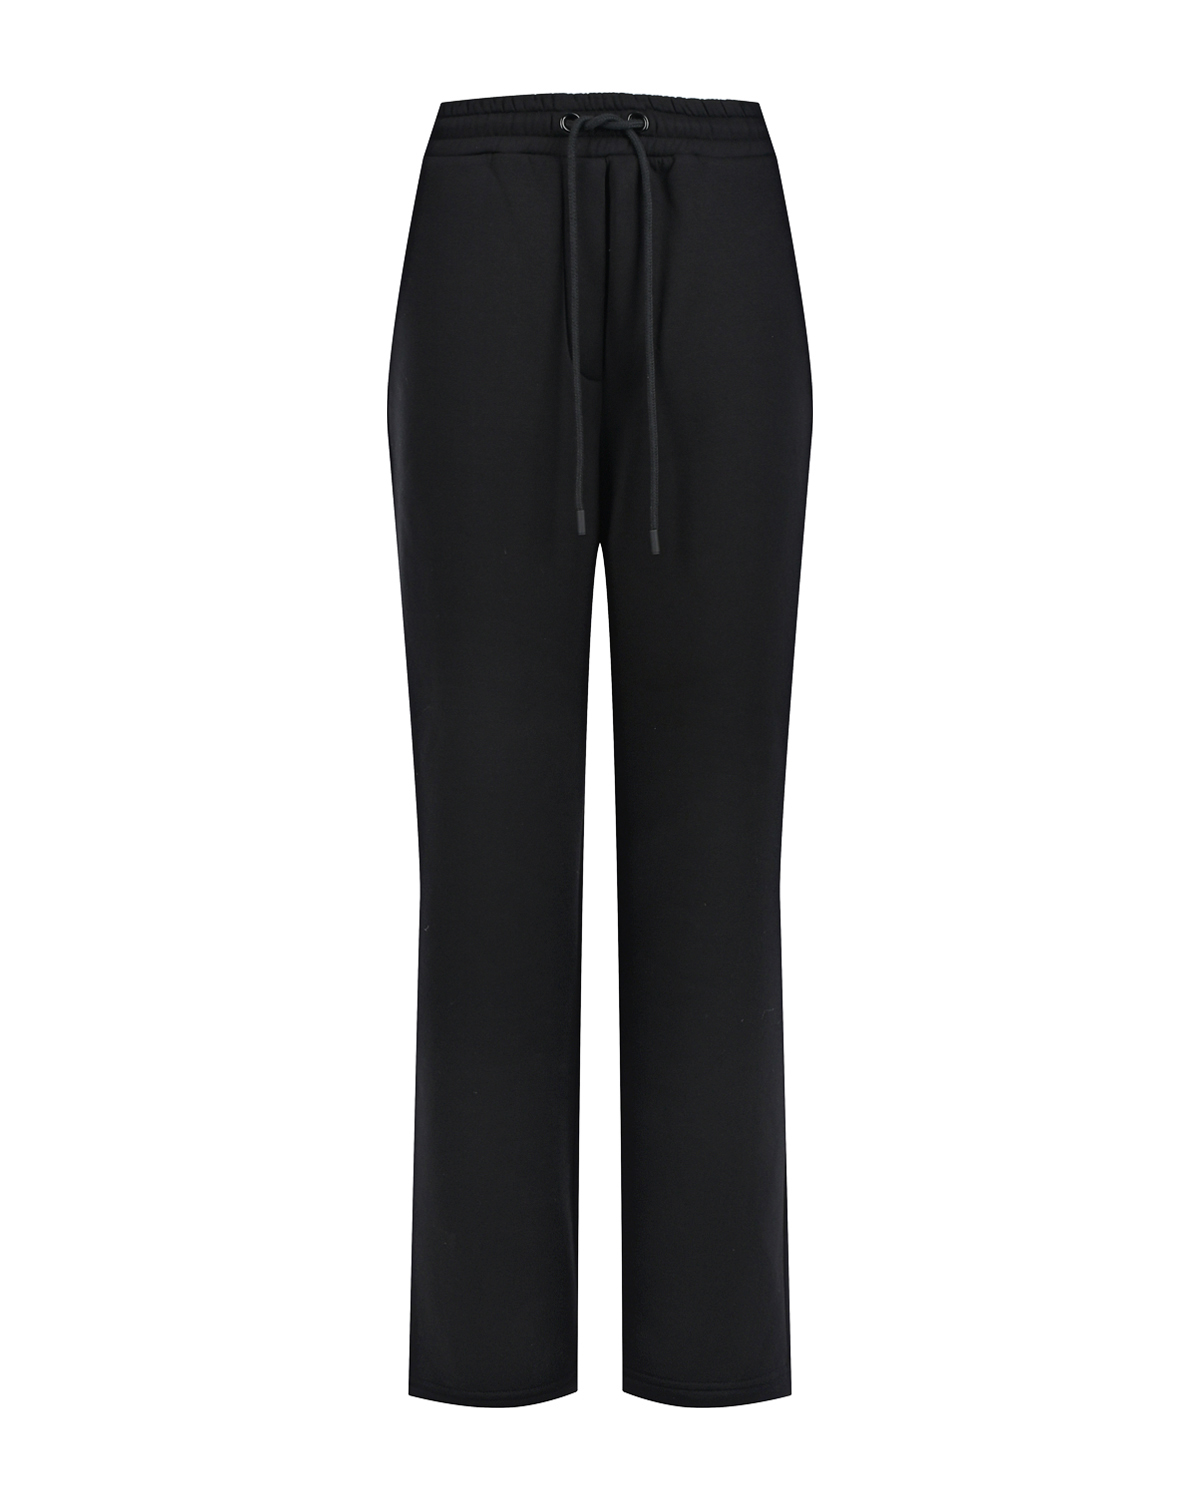 Черные брюки свободного кроя Dan Maralex, размер 46, цвет черный